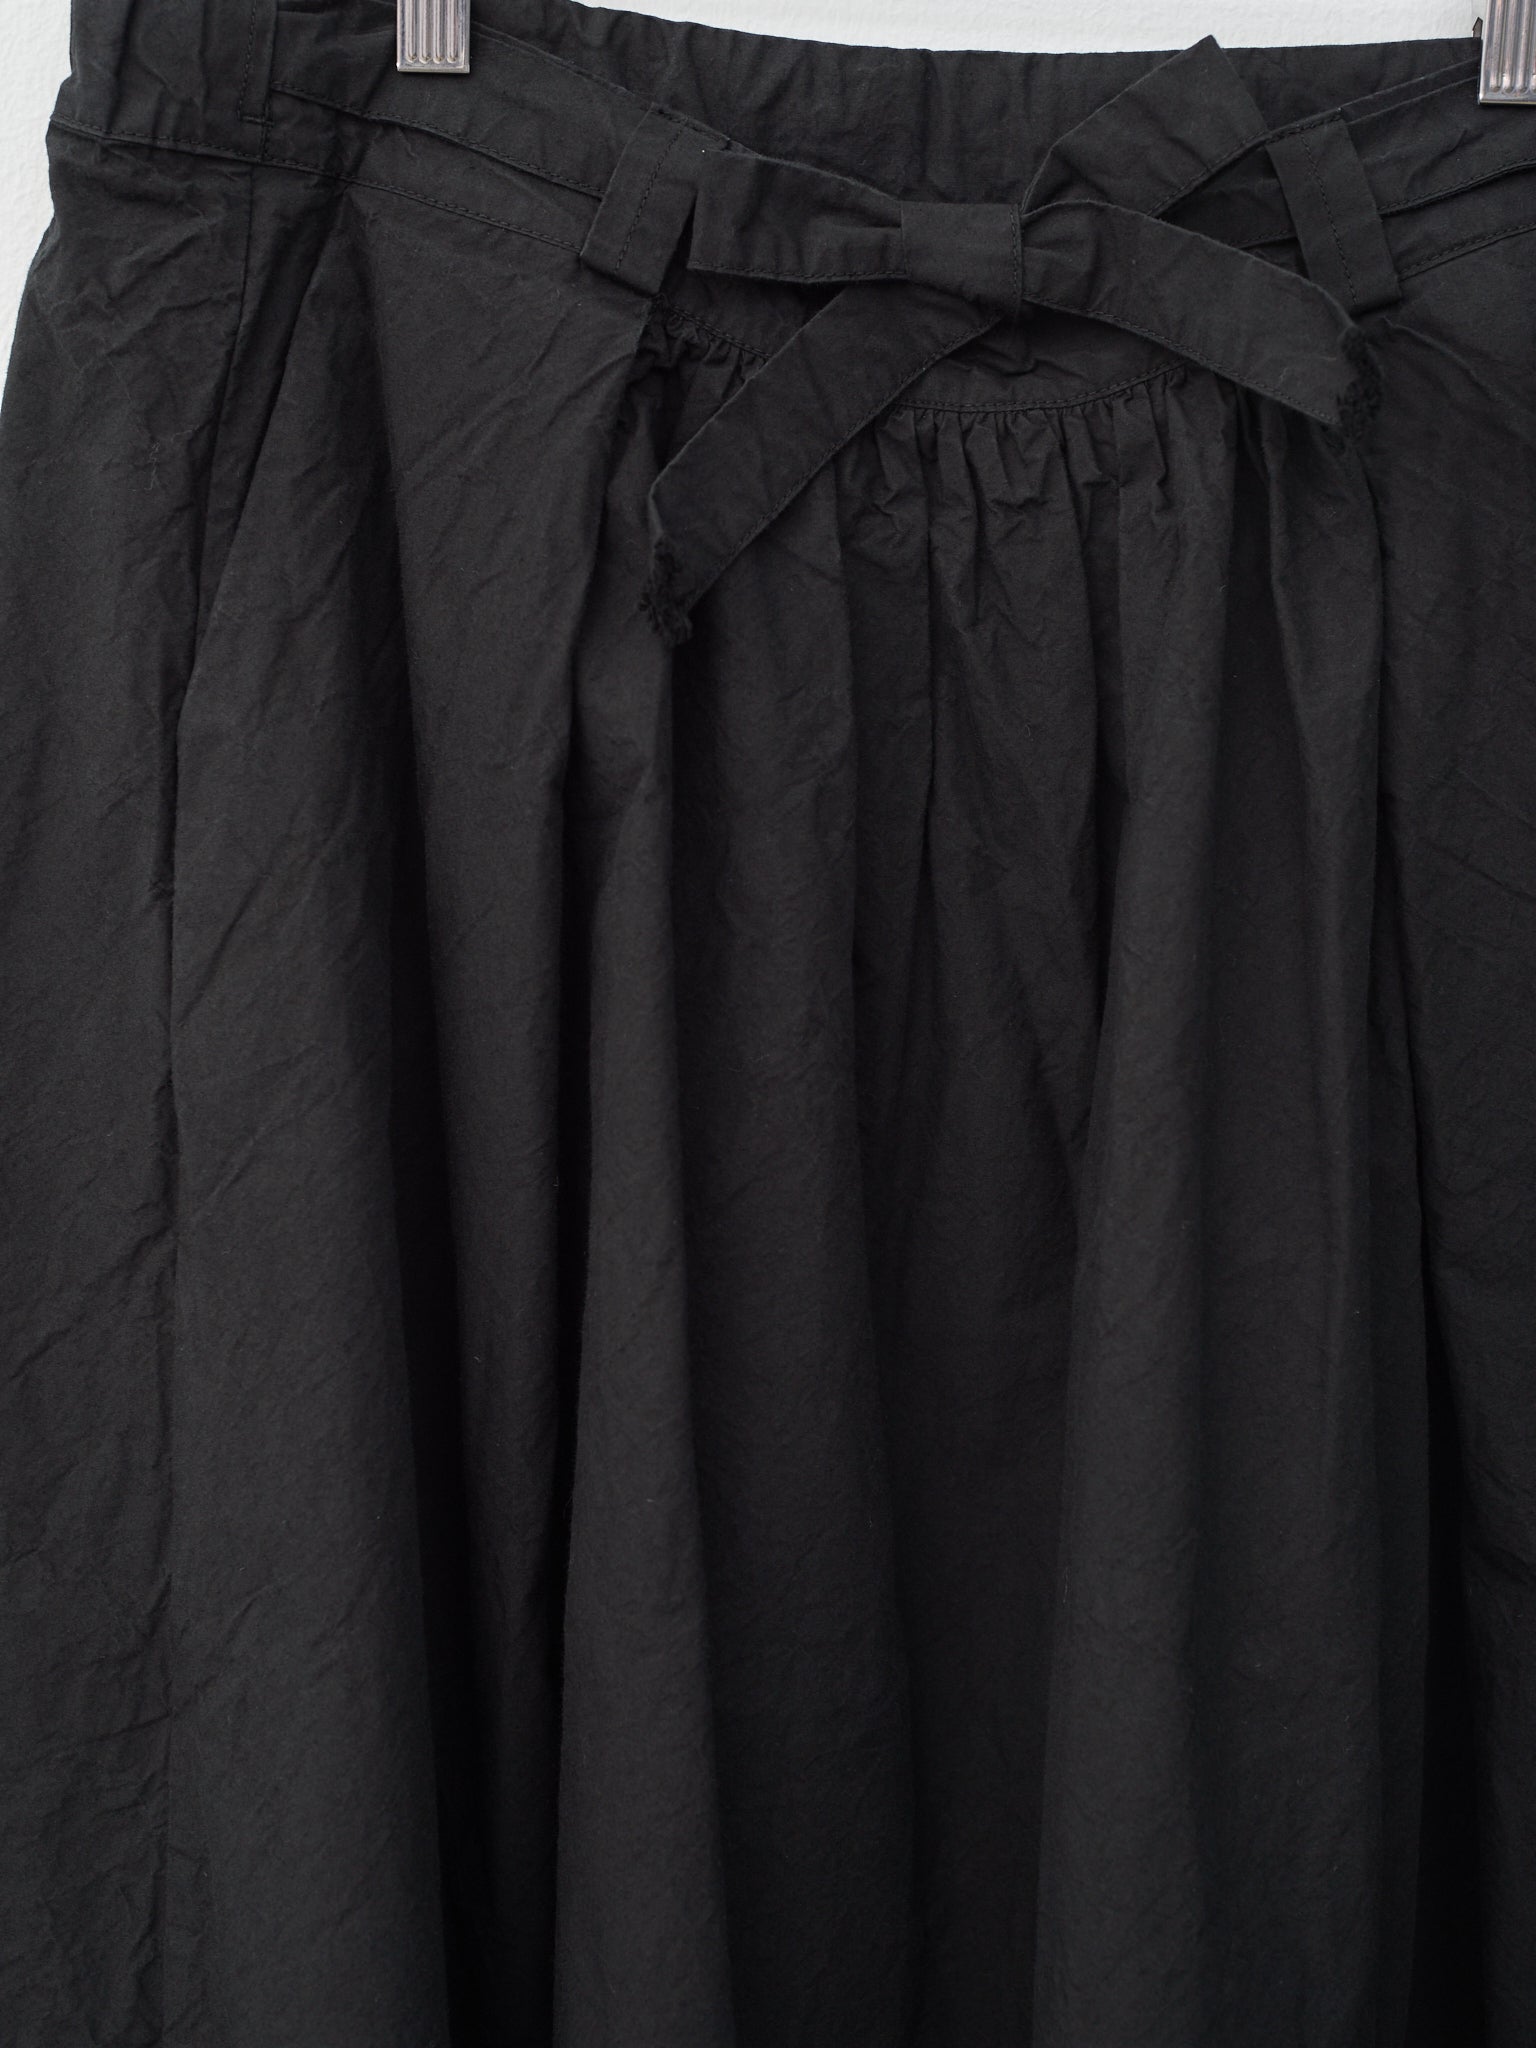 Namu Shop - Veritecoeur Daily Skirt - Black